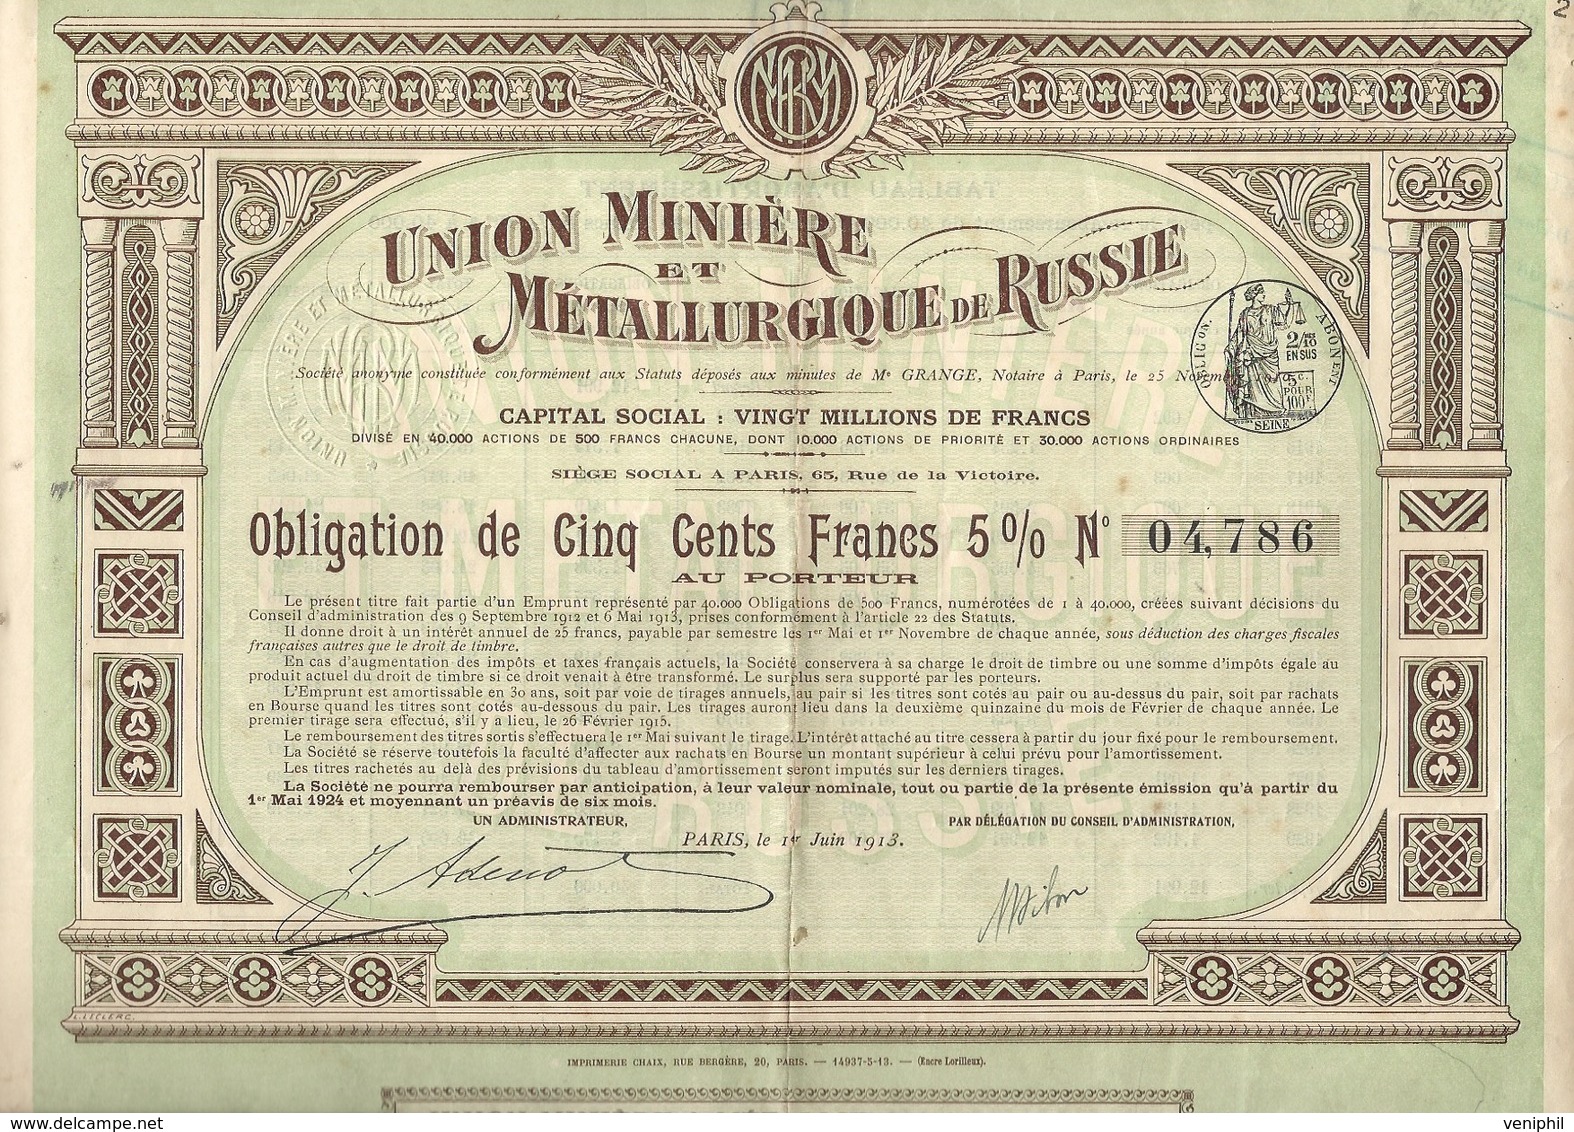 UNION MINIERE ET METALLURGIQUE DE RUSSIE-OBLIGATION DE 500 FRS 5% - ANNEE 1913 - Industrial